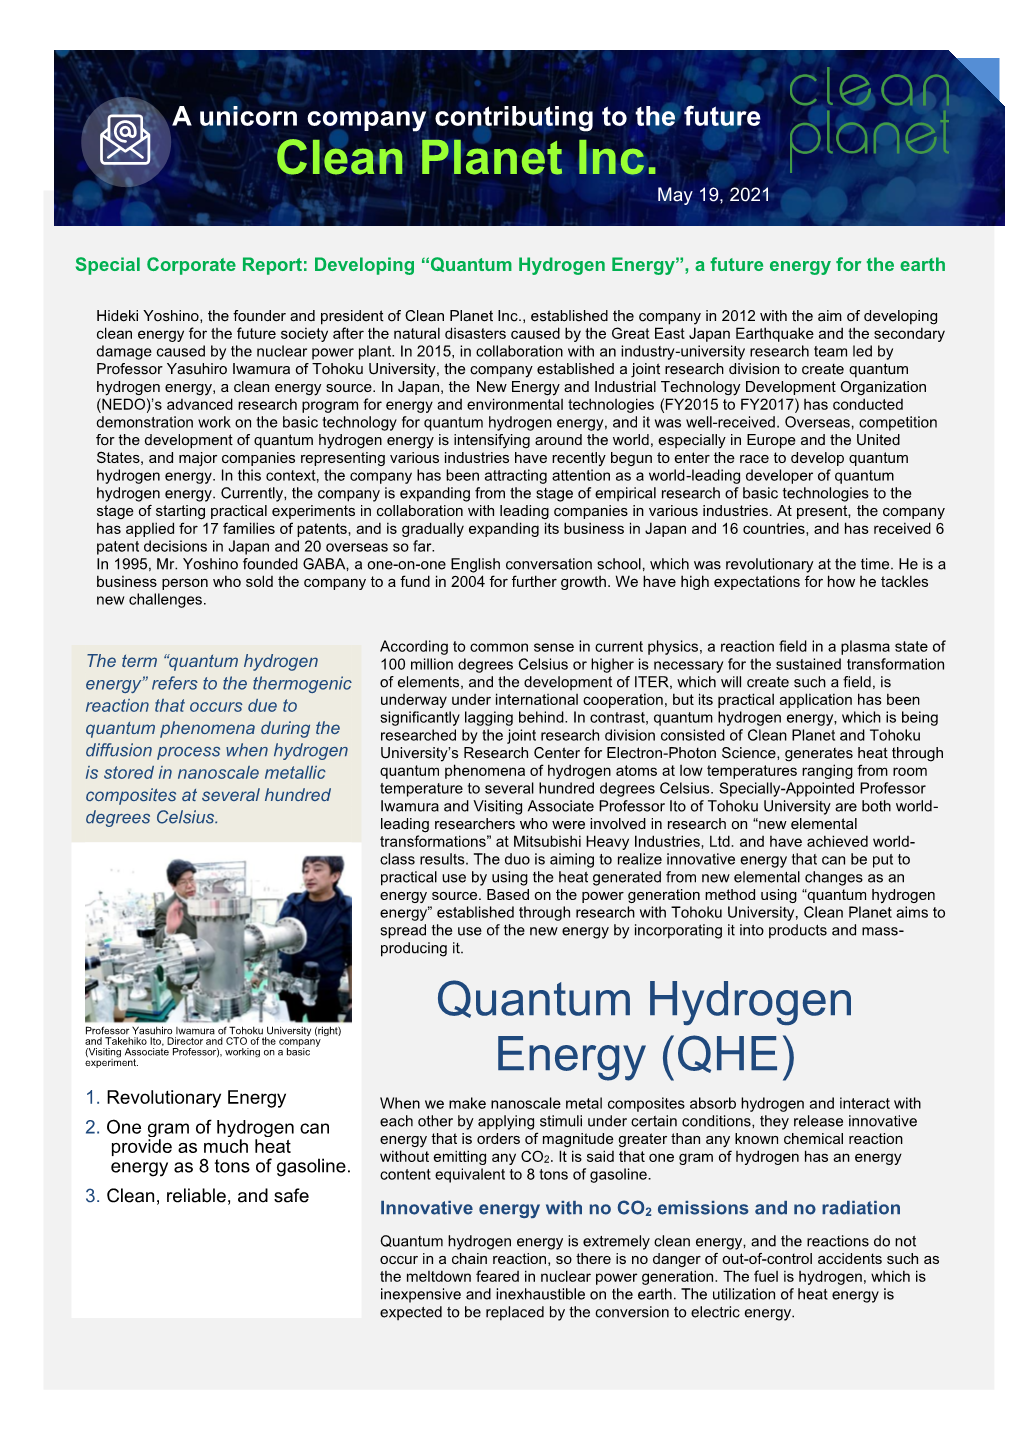 Clean Planet Inc. Quantum Hydrogen Energy (QHE)